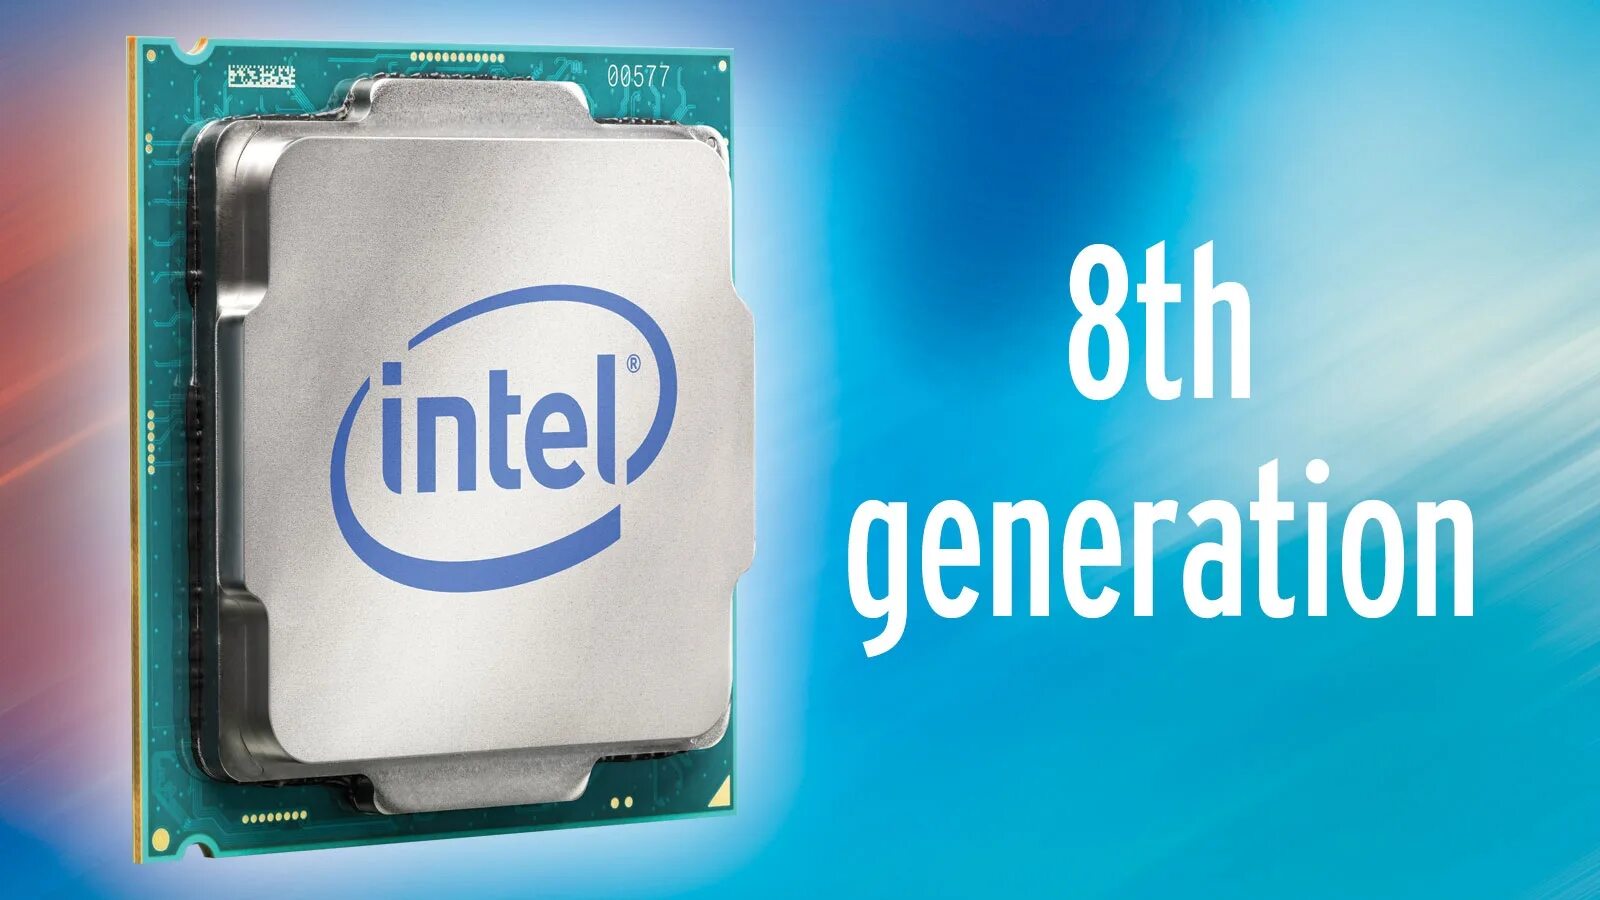 Новое поколение intel. Процессор Intel Core i7 Coffee Lake. Intel Core 8th Gen. Процессор Intel Core i7 Coffee Lake чипсет. Процессор Intel Core i7-8700k.